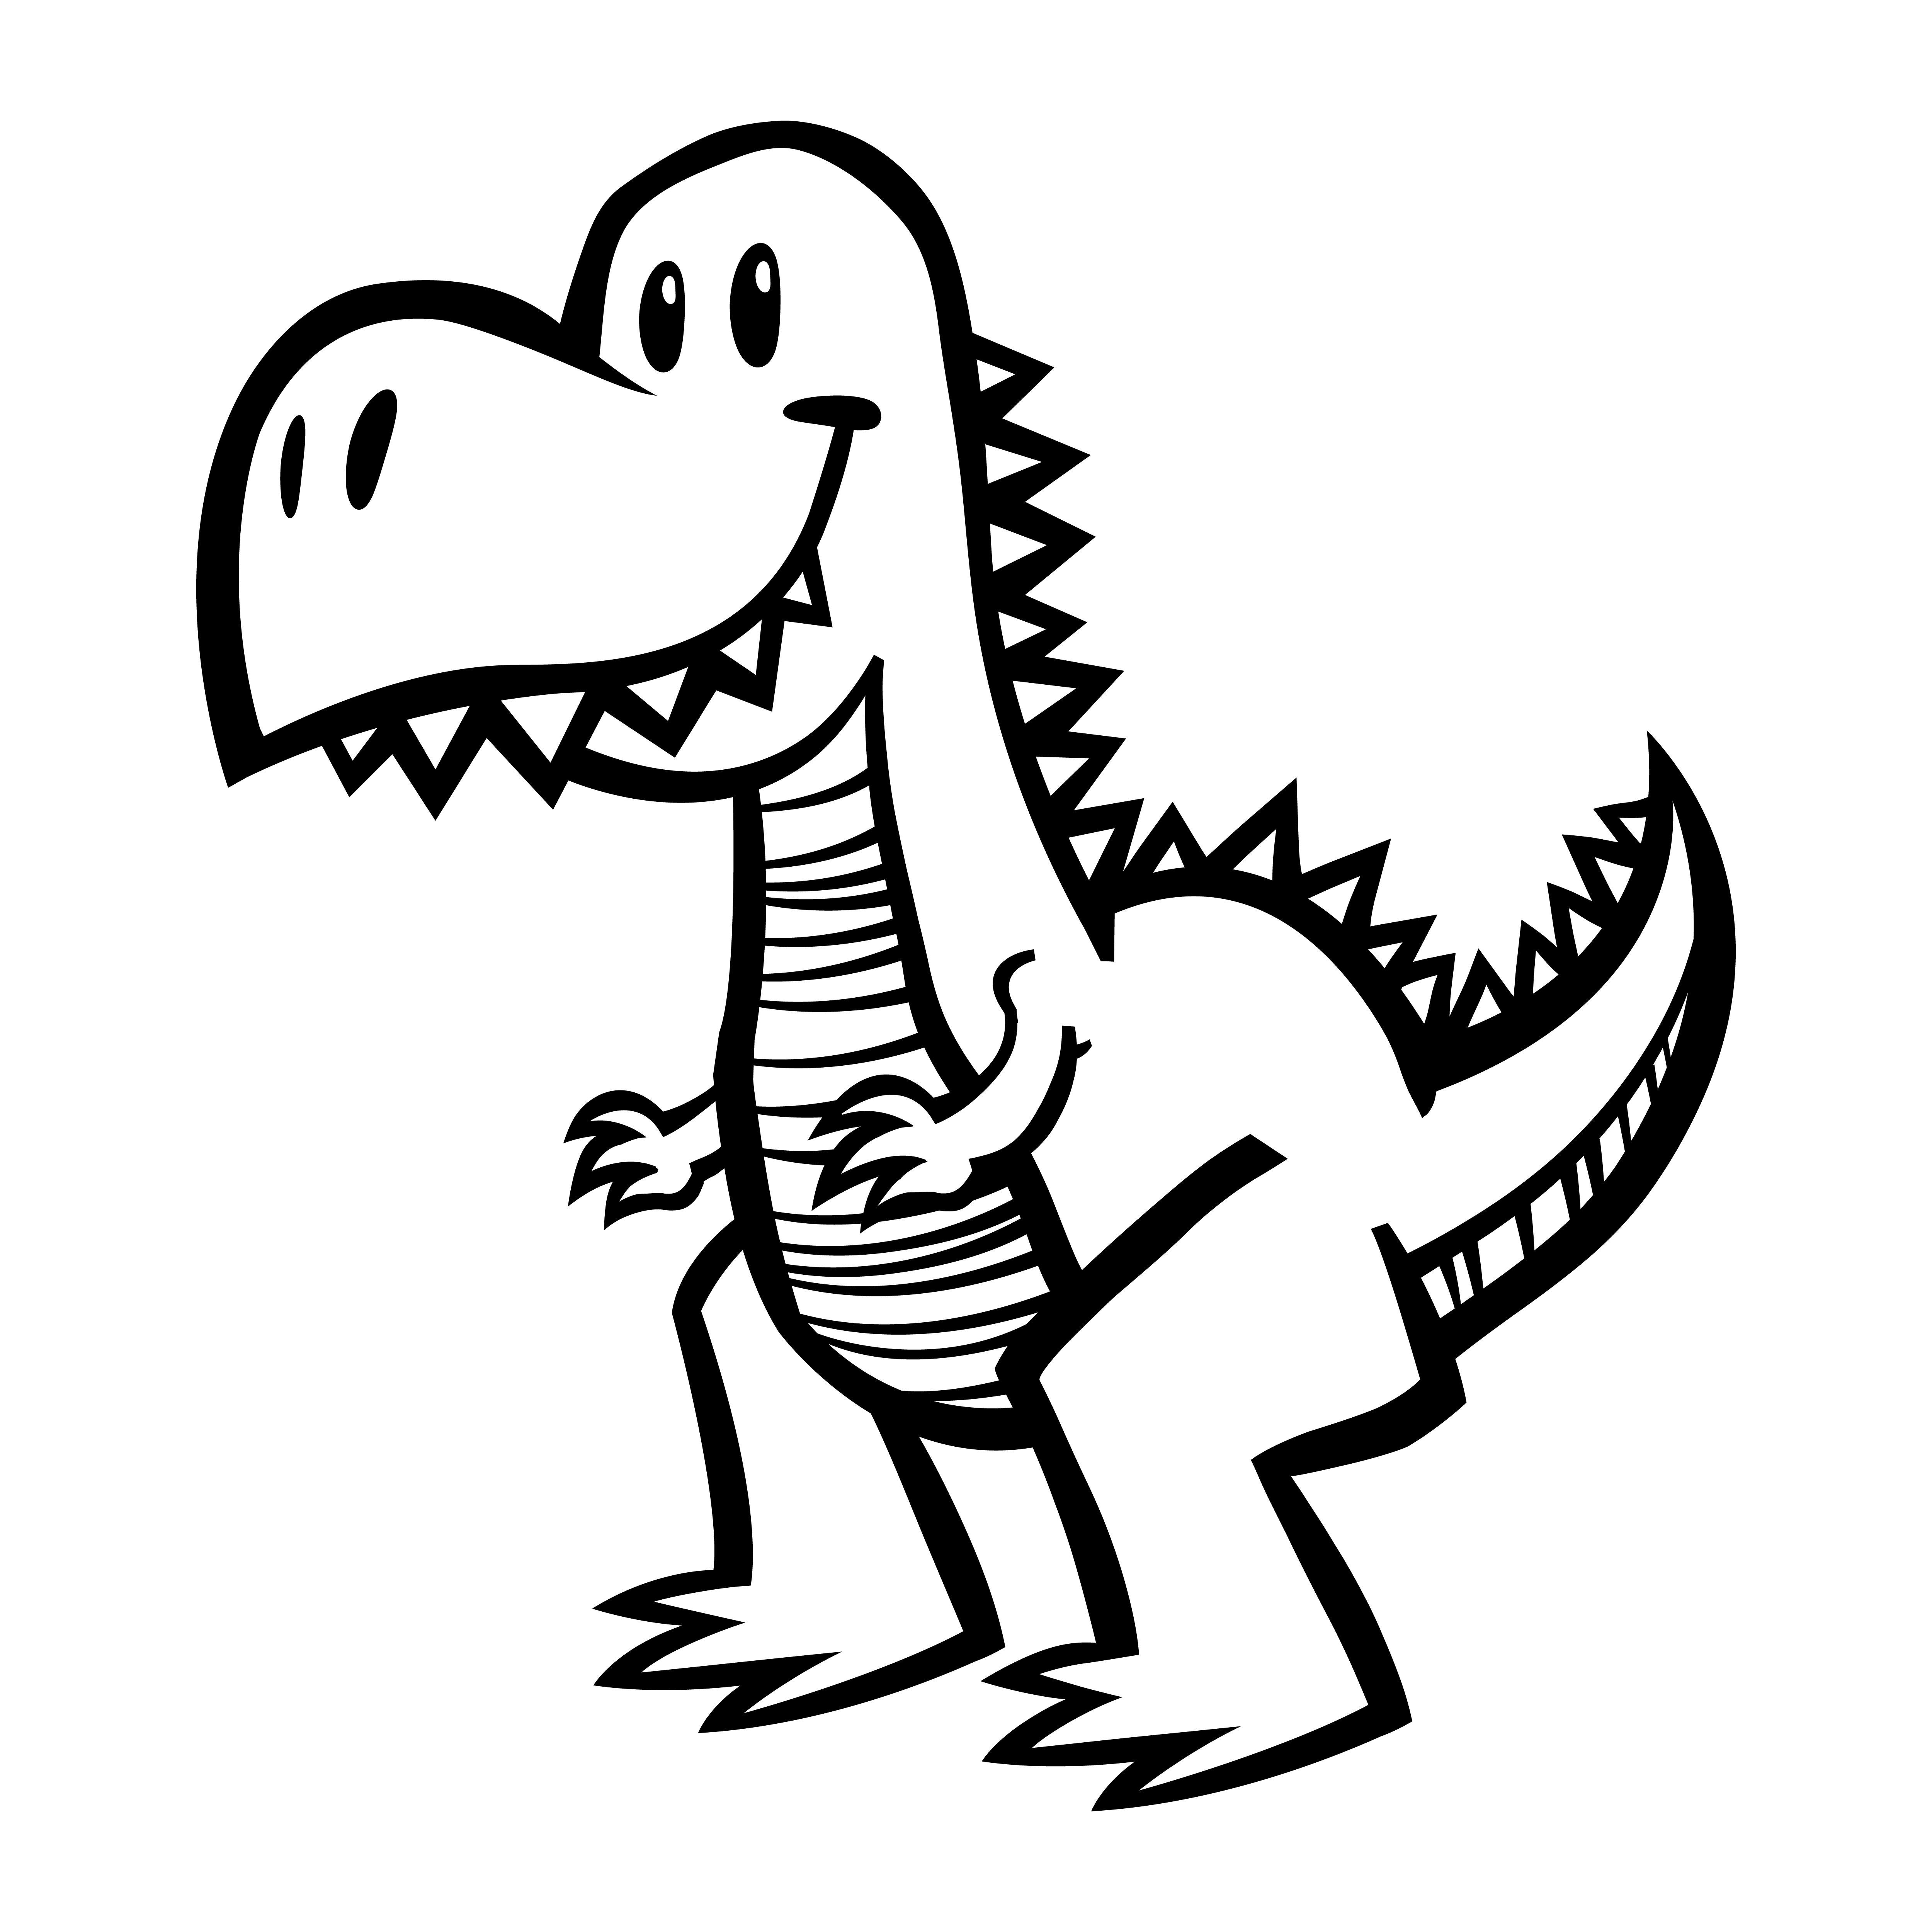 tiranossauro rex dos desenhos animados em pose de corrida 6093853 Vetor no  Vecteezy